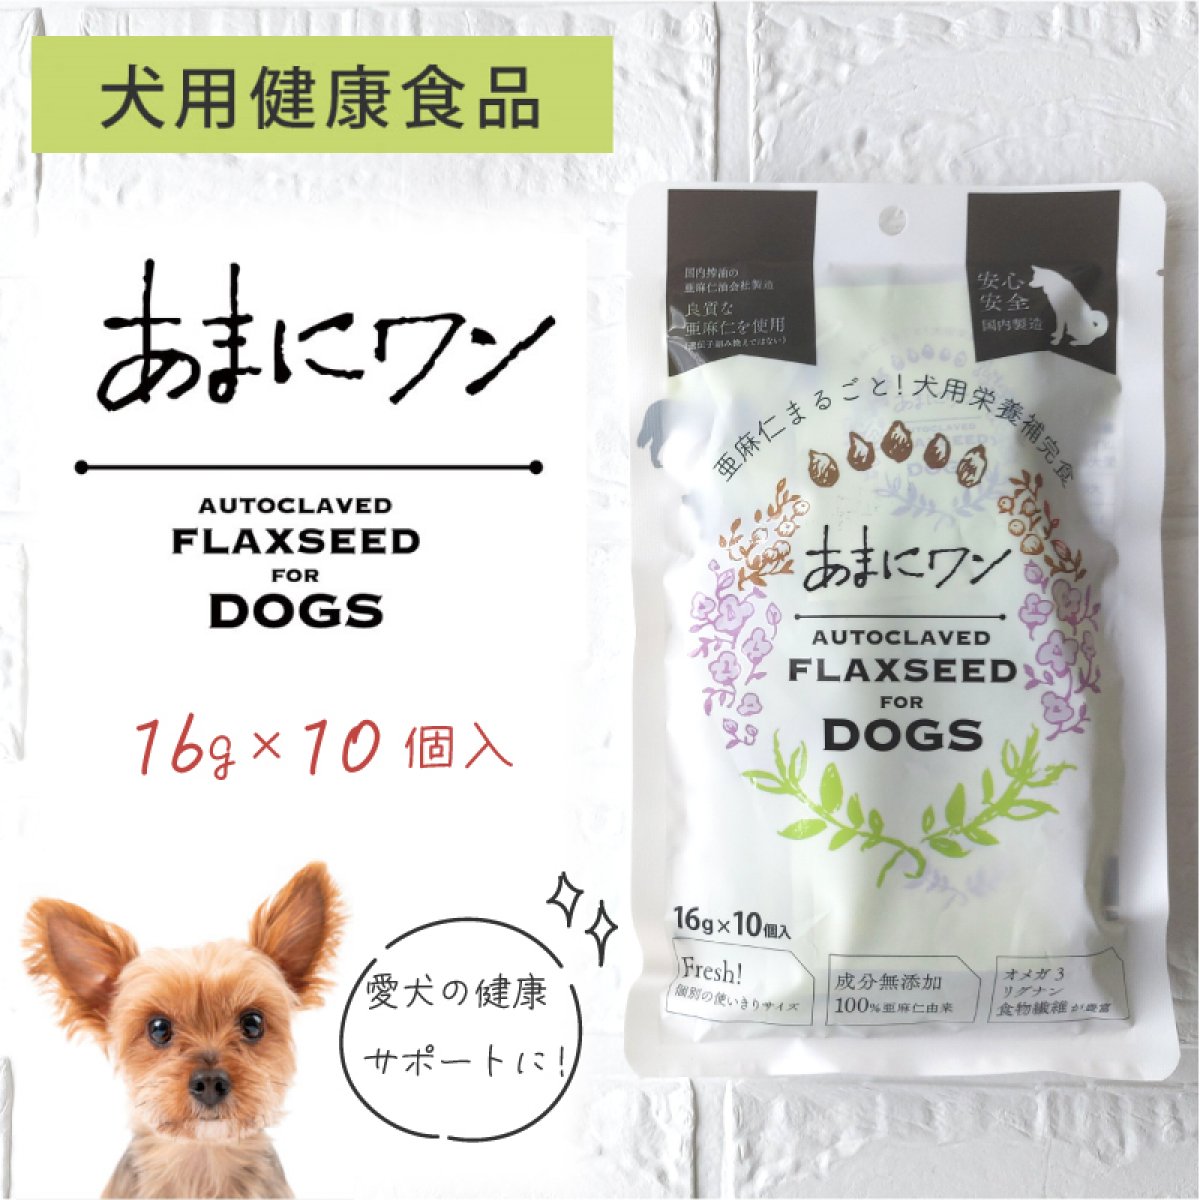 あまにワン 犬用健康食品 ドッグフード 個包装16g×10個入り 亜麻仁 あまに アマニ オメガ3 食物繊維